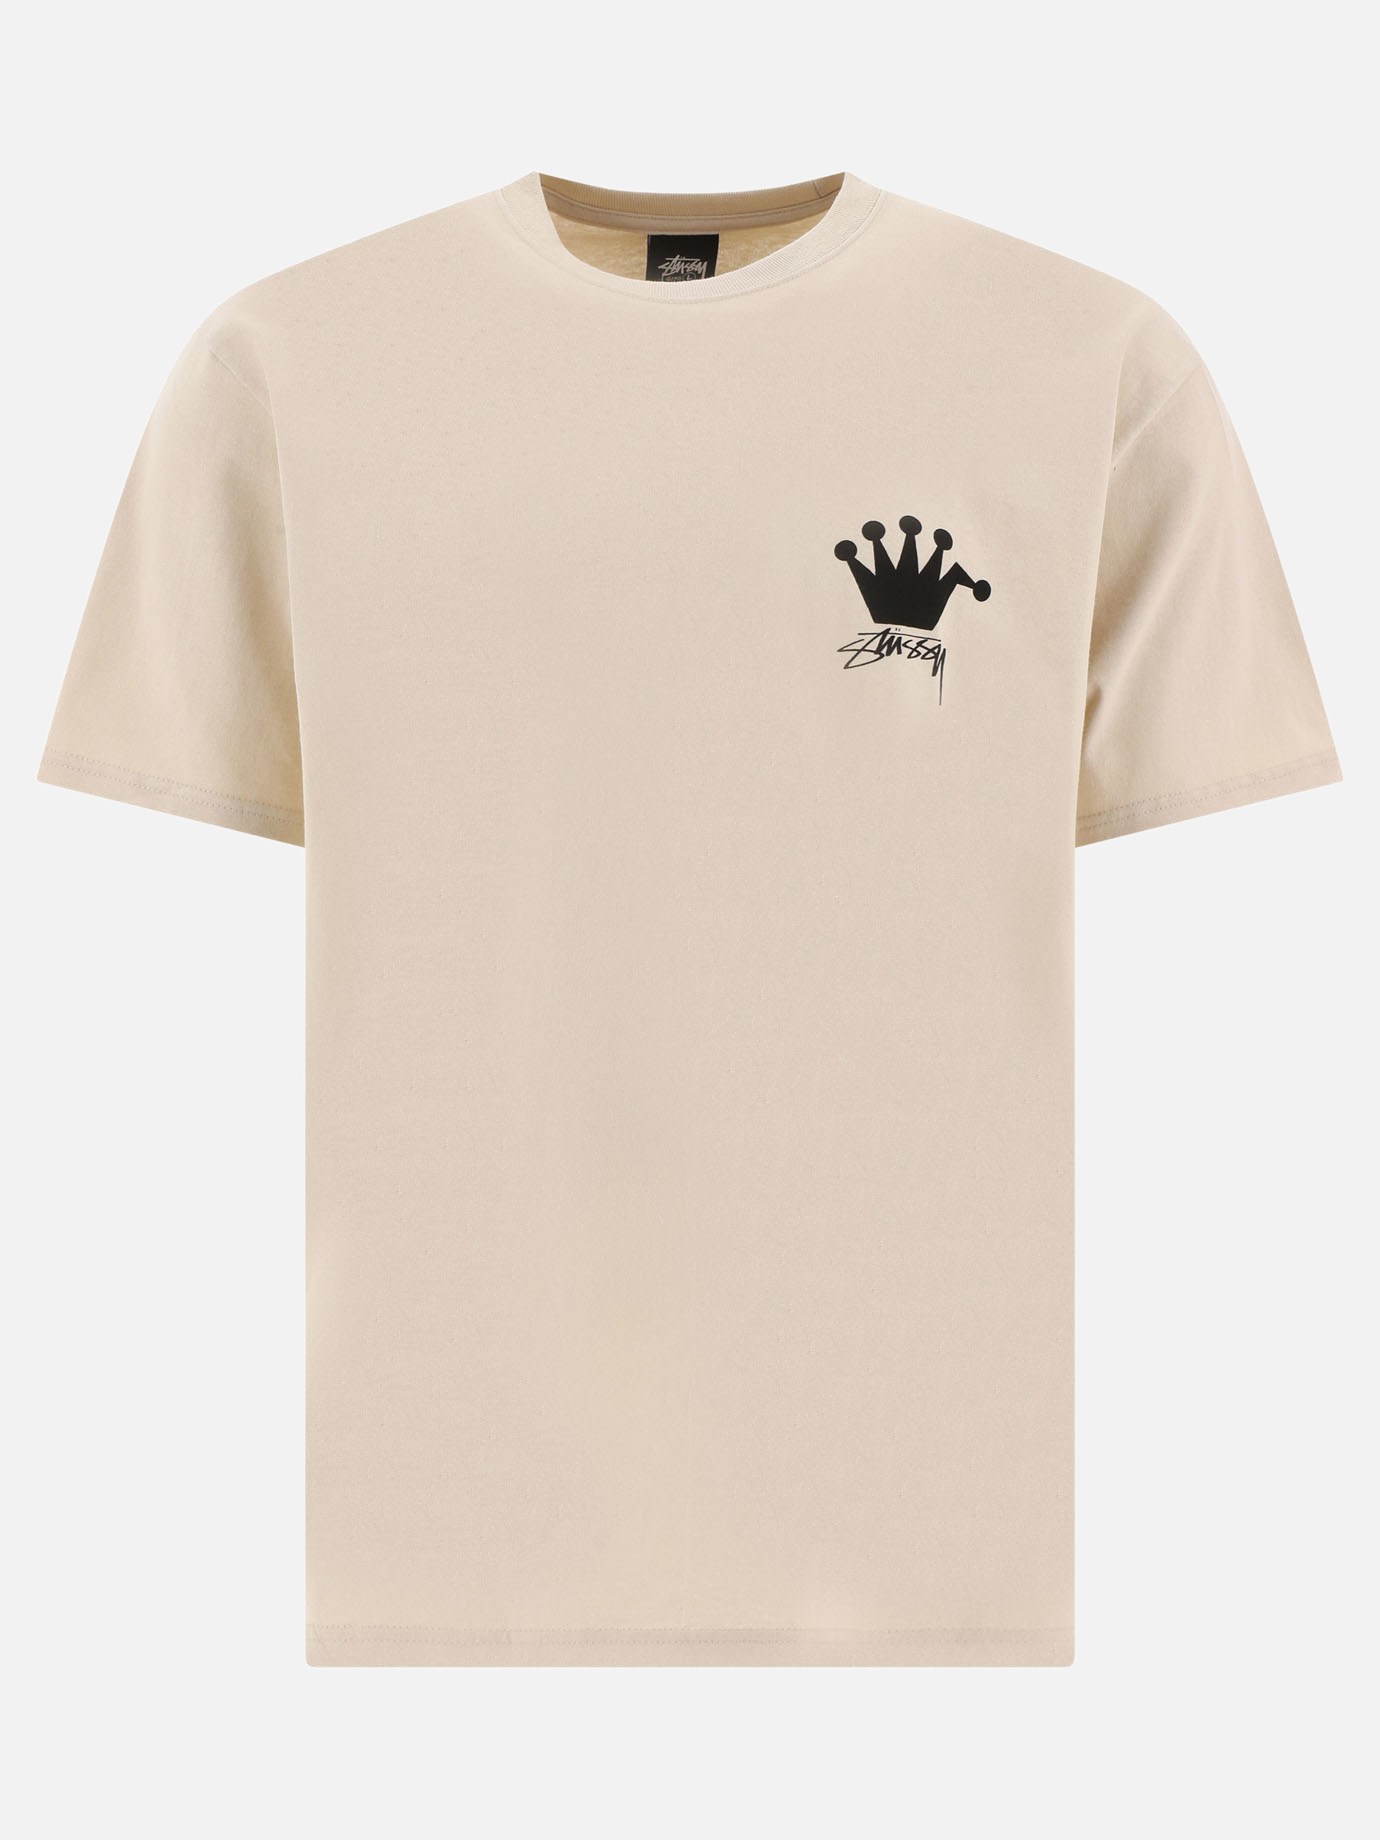 T-shirt  LB Crown by Stüssy - 2